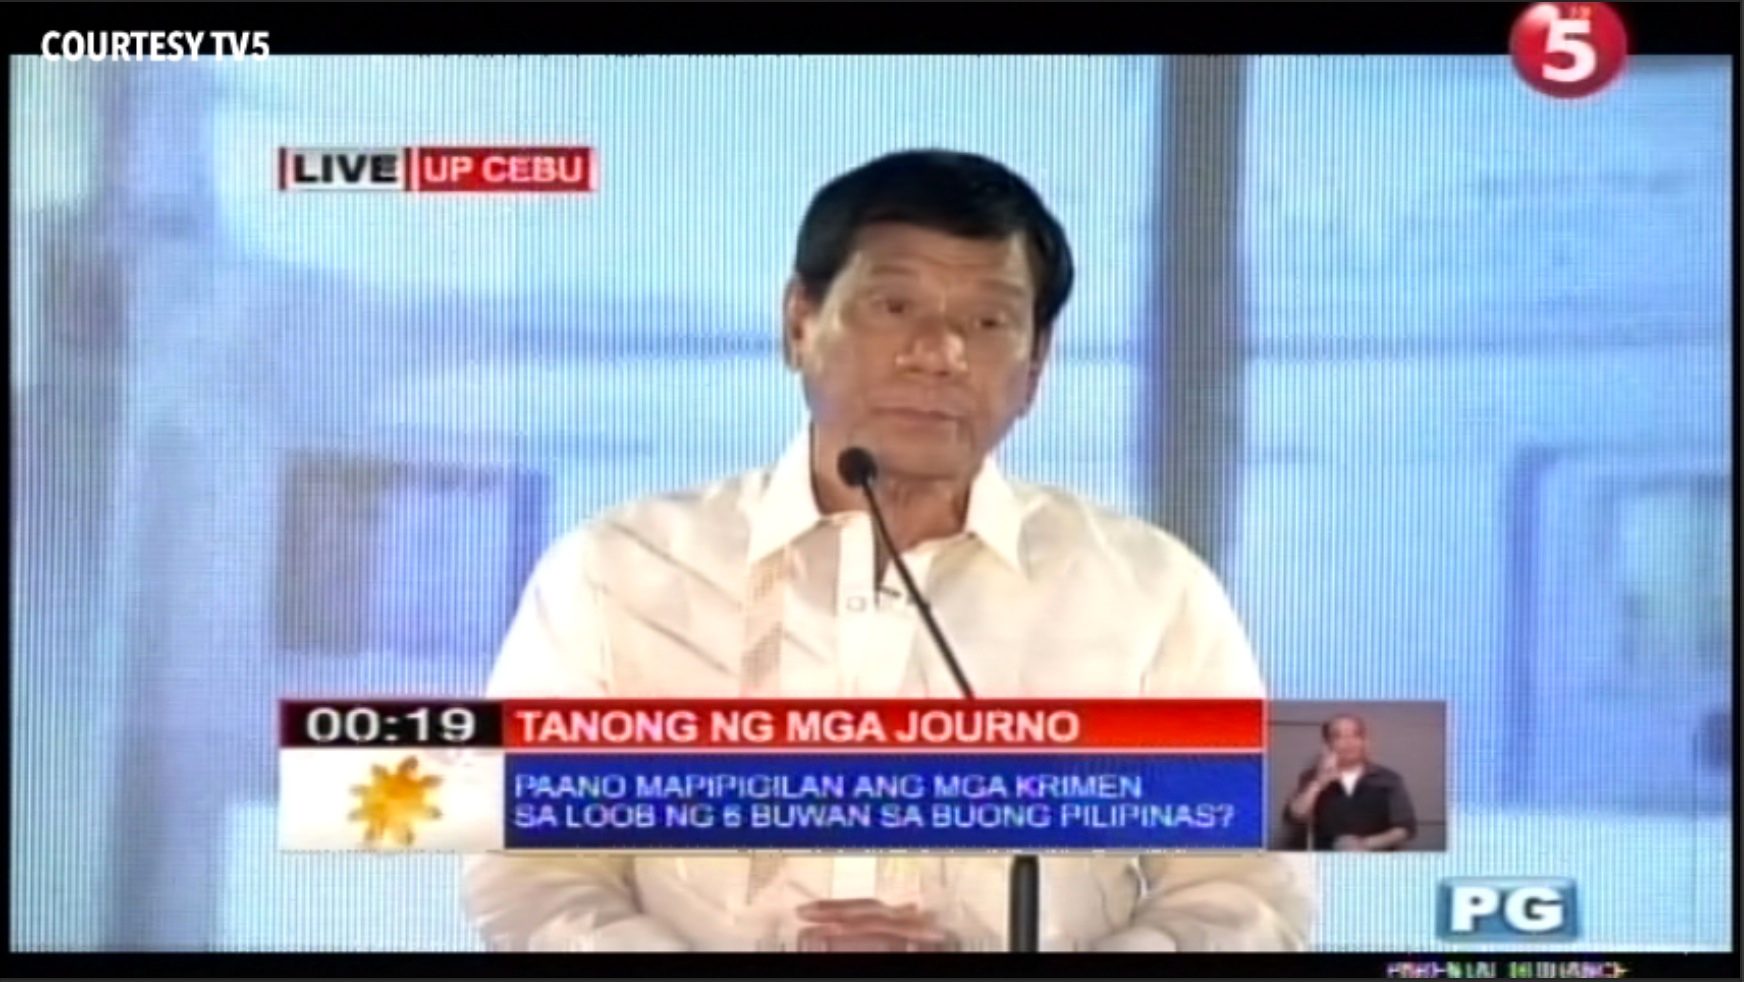 Duterte sweeps Rappler online polls for Cebu debate